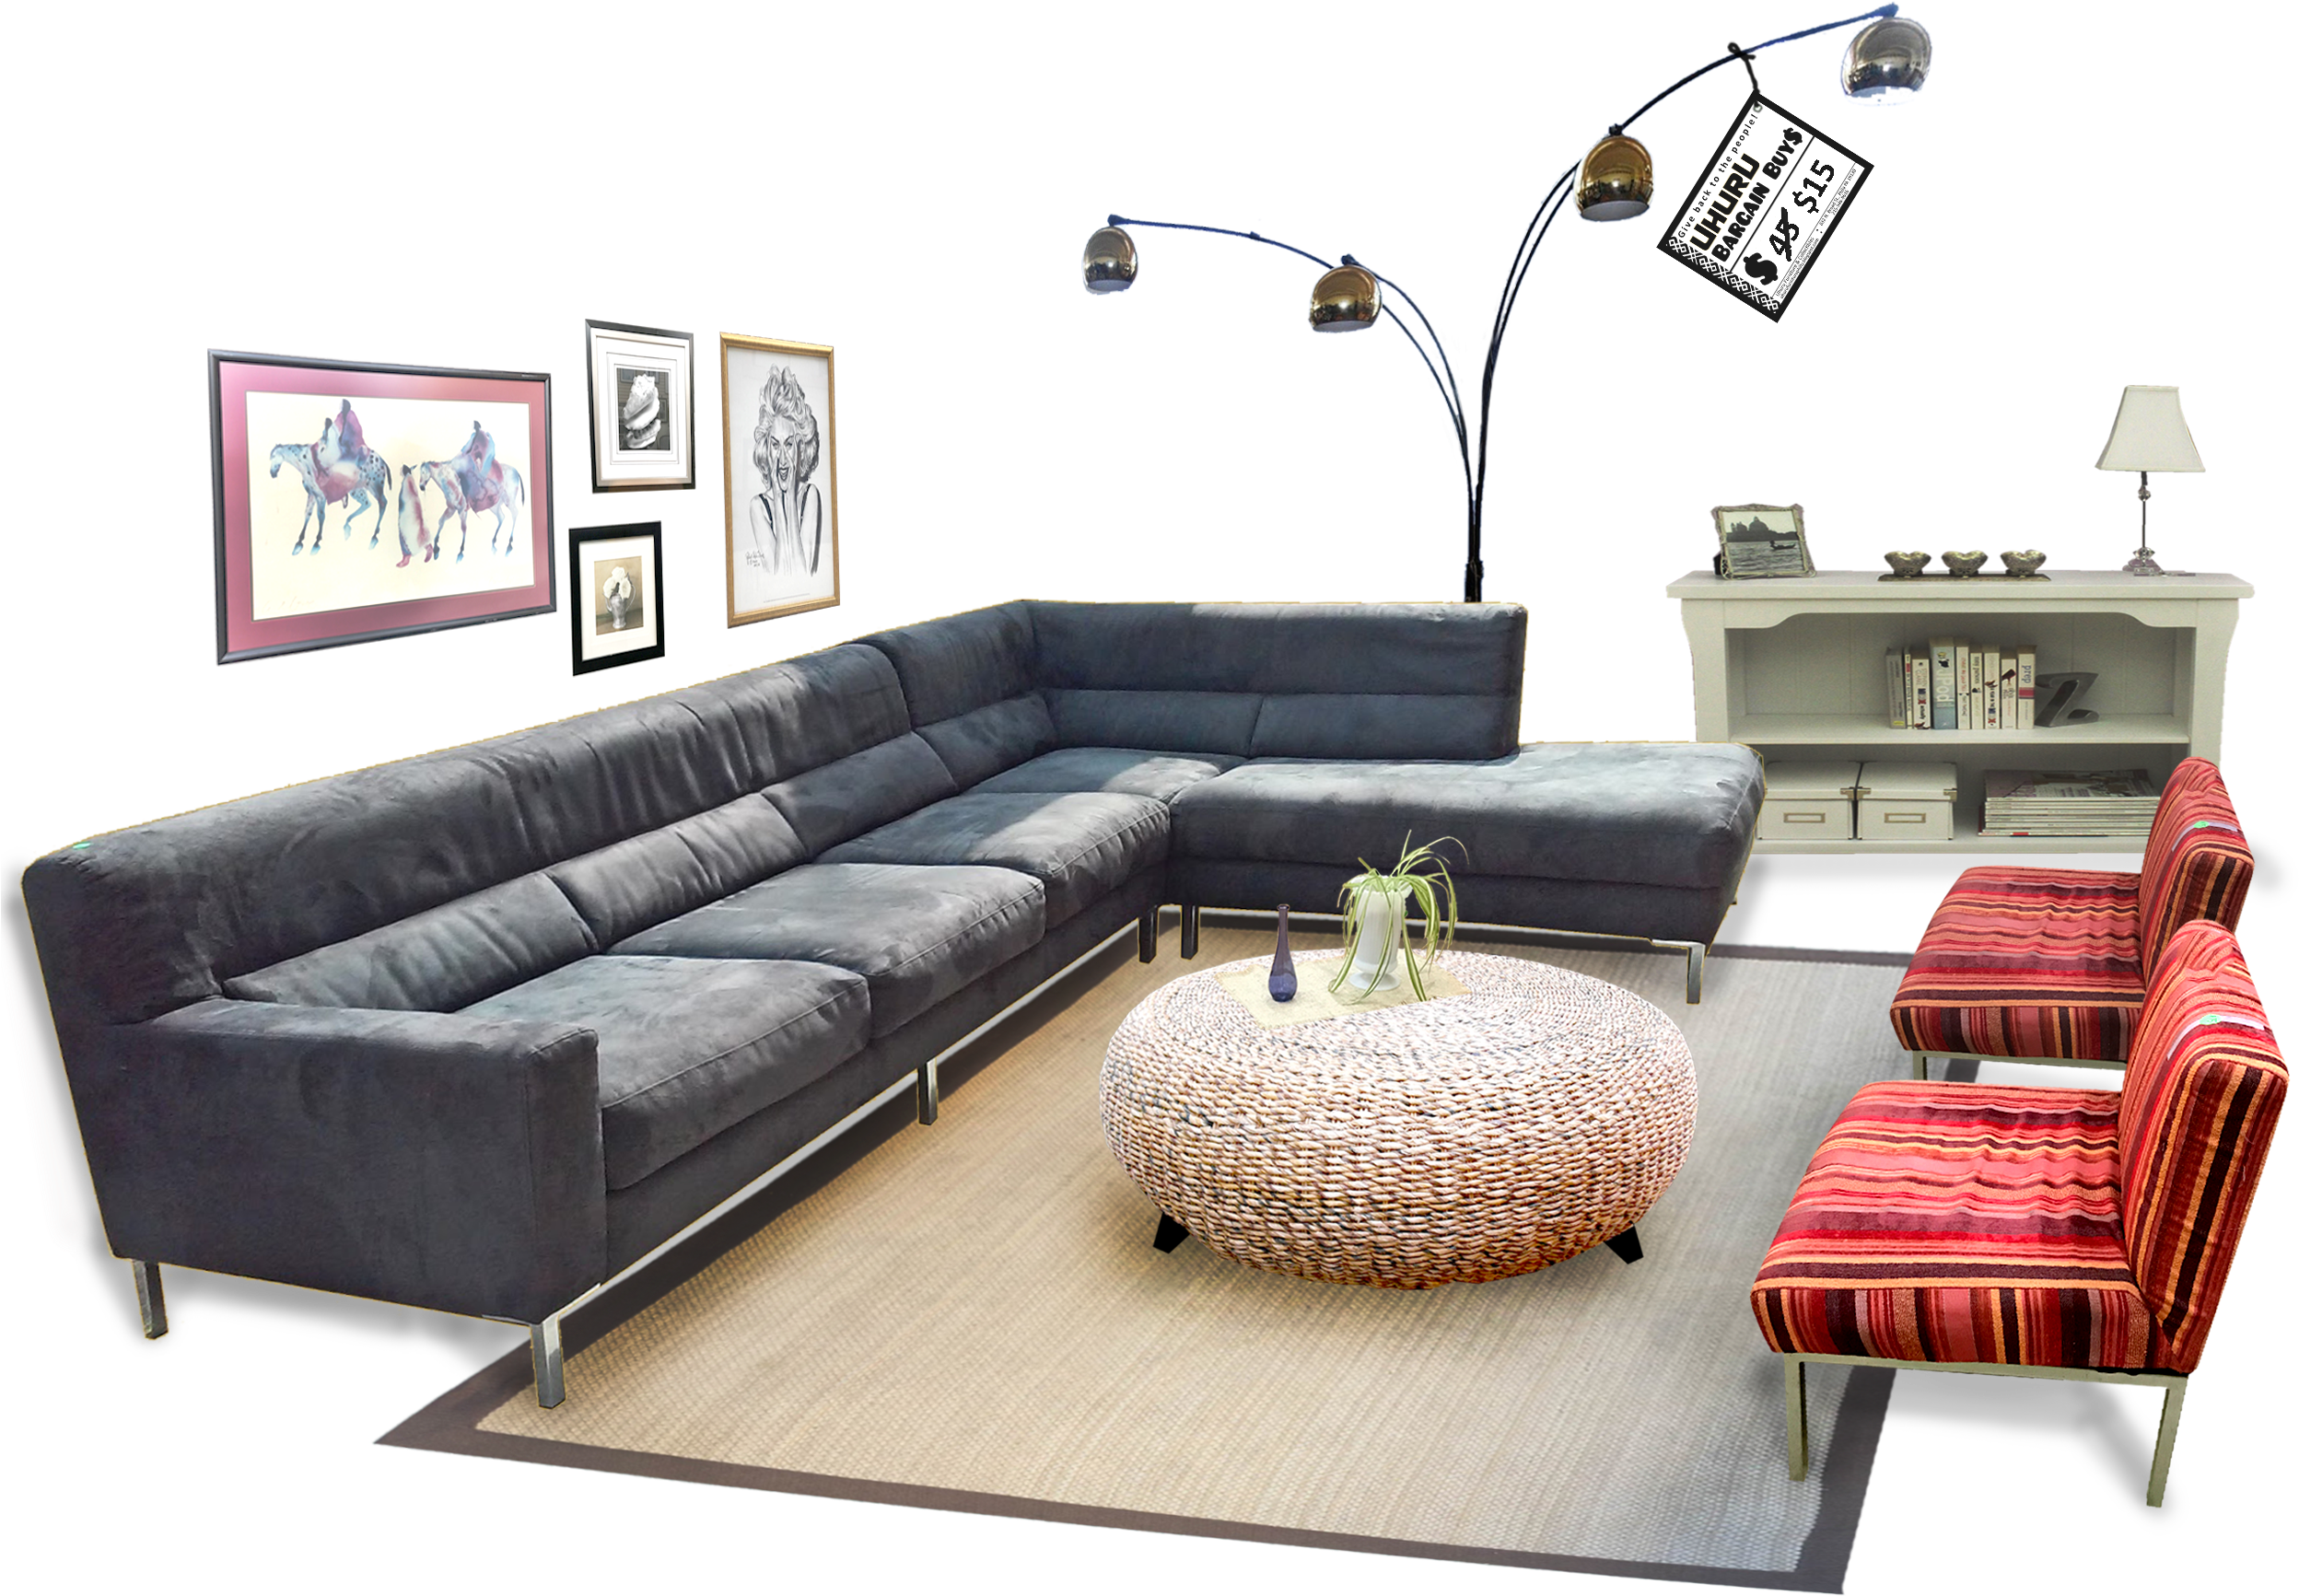 Elegant Contemporary Living Room Setup